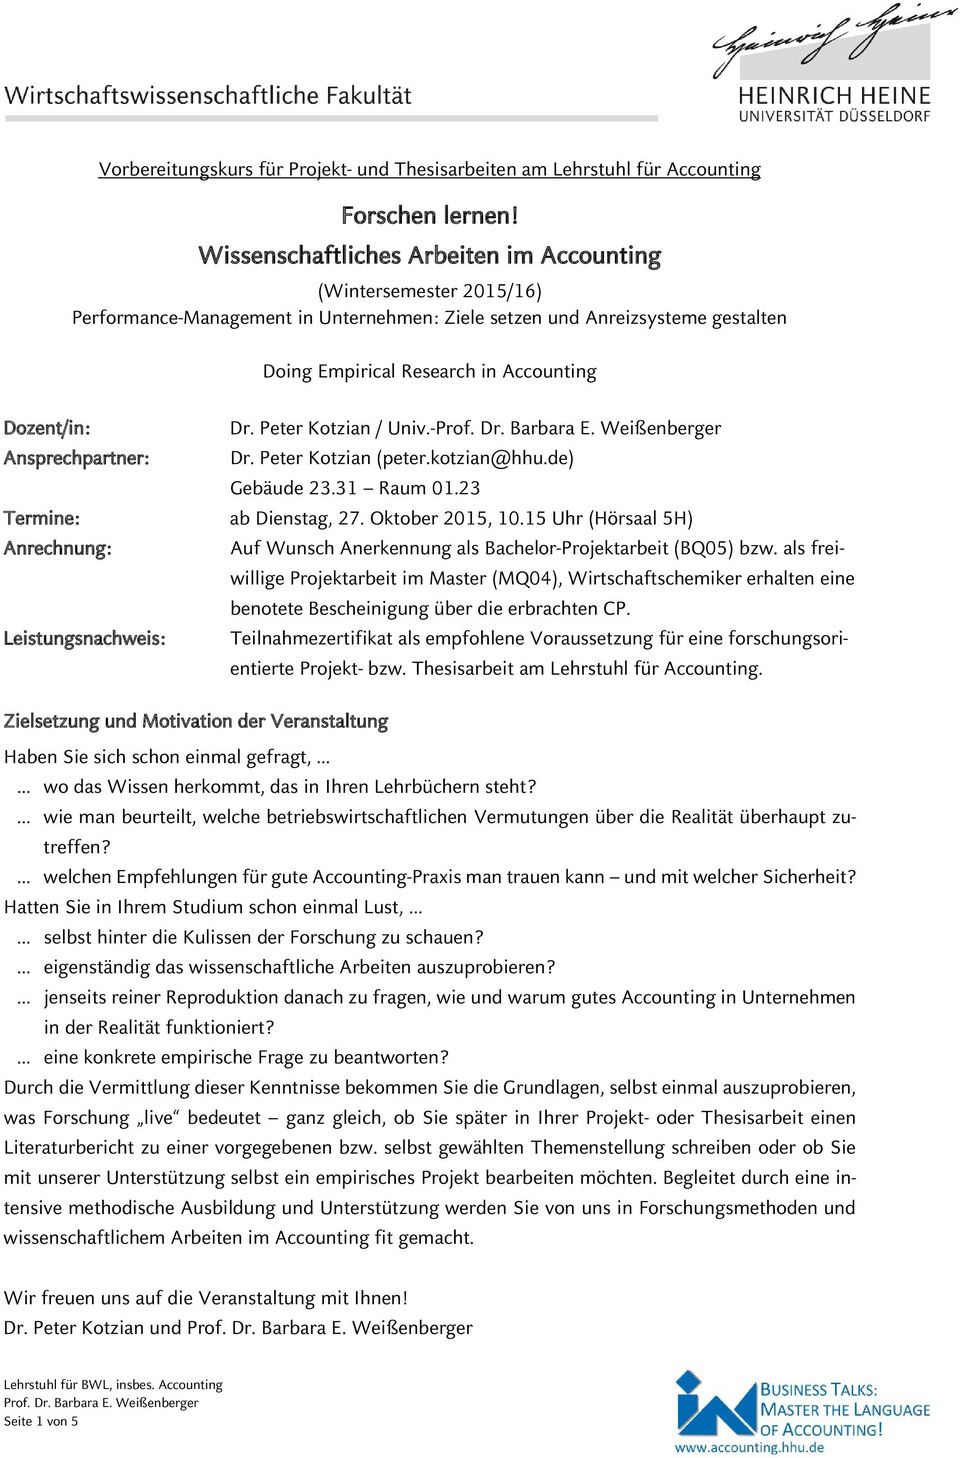 Peter Kotzian / Univ.- Ansprechpartner: Dr. Peter Kotzian (peter.kotzian@hhu.de) Gebäude 23.31 Raum 01.23 Termine: ab Dienstag, 27. Oktober 2015, 10.